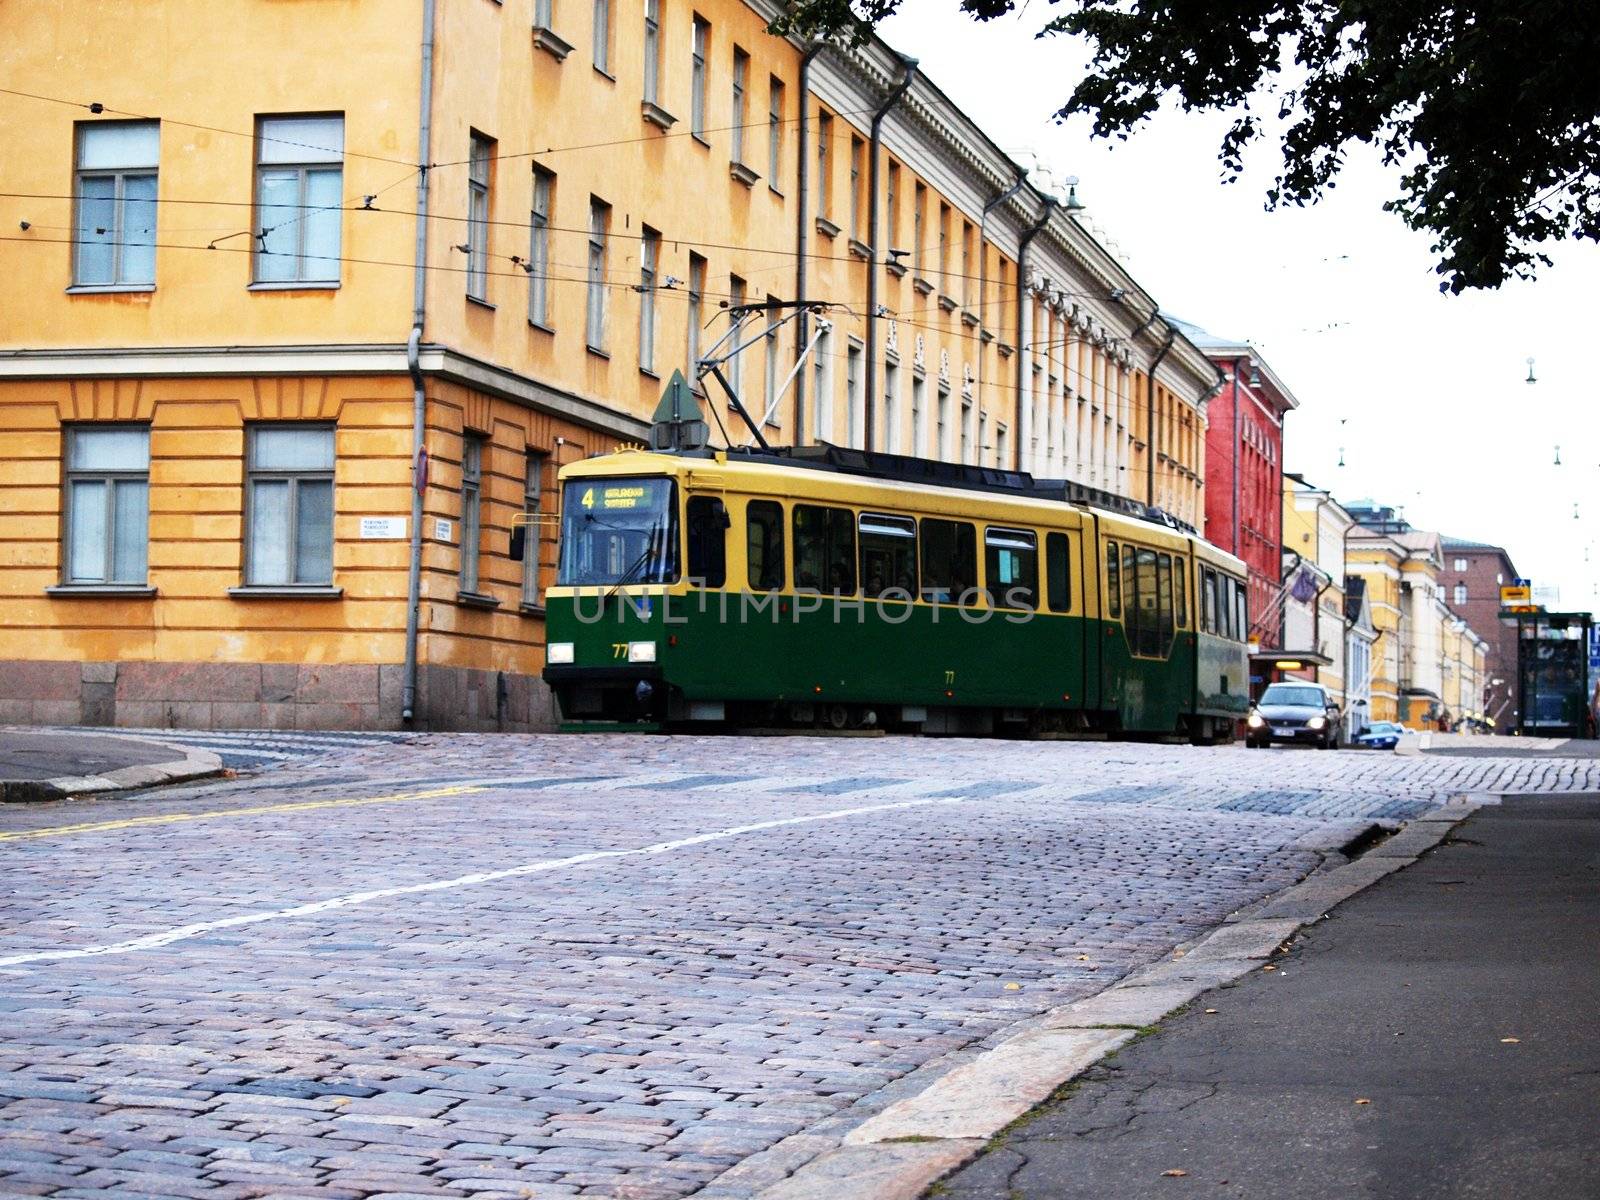 Green old tram in Helsinki Finland by Arvebettum